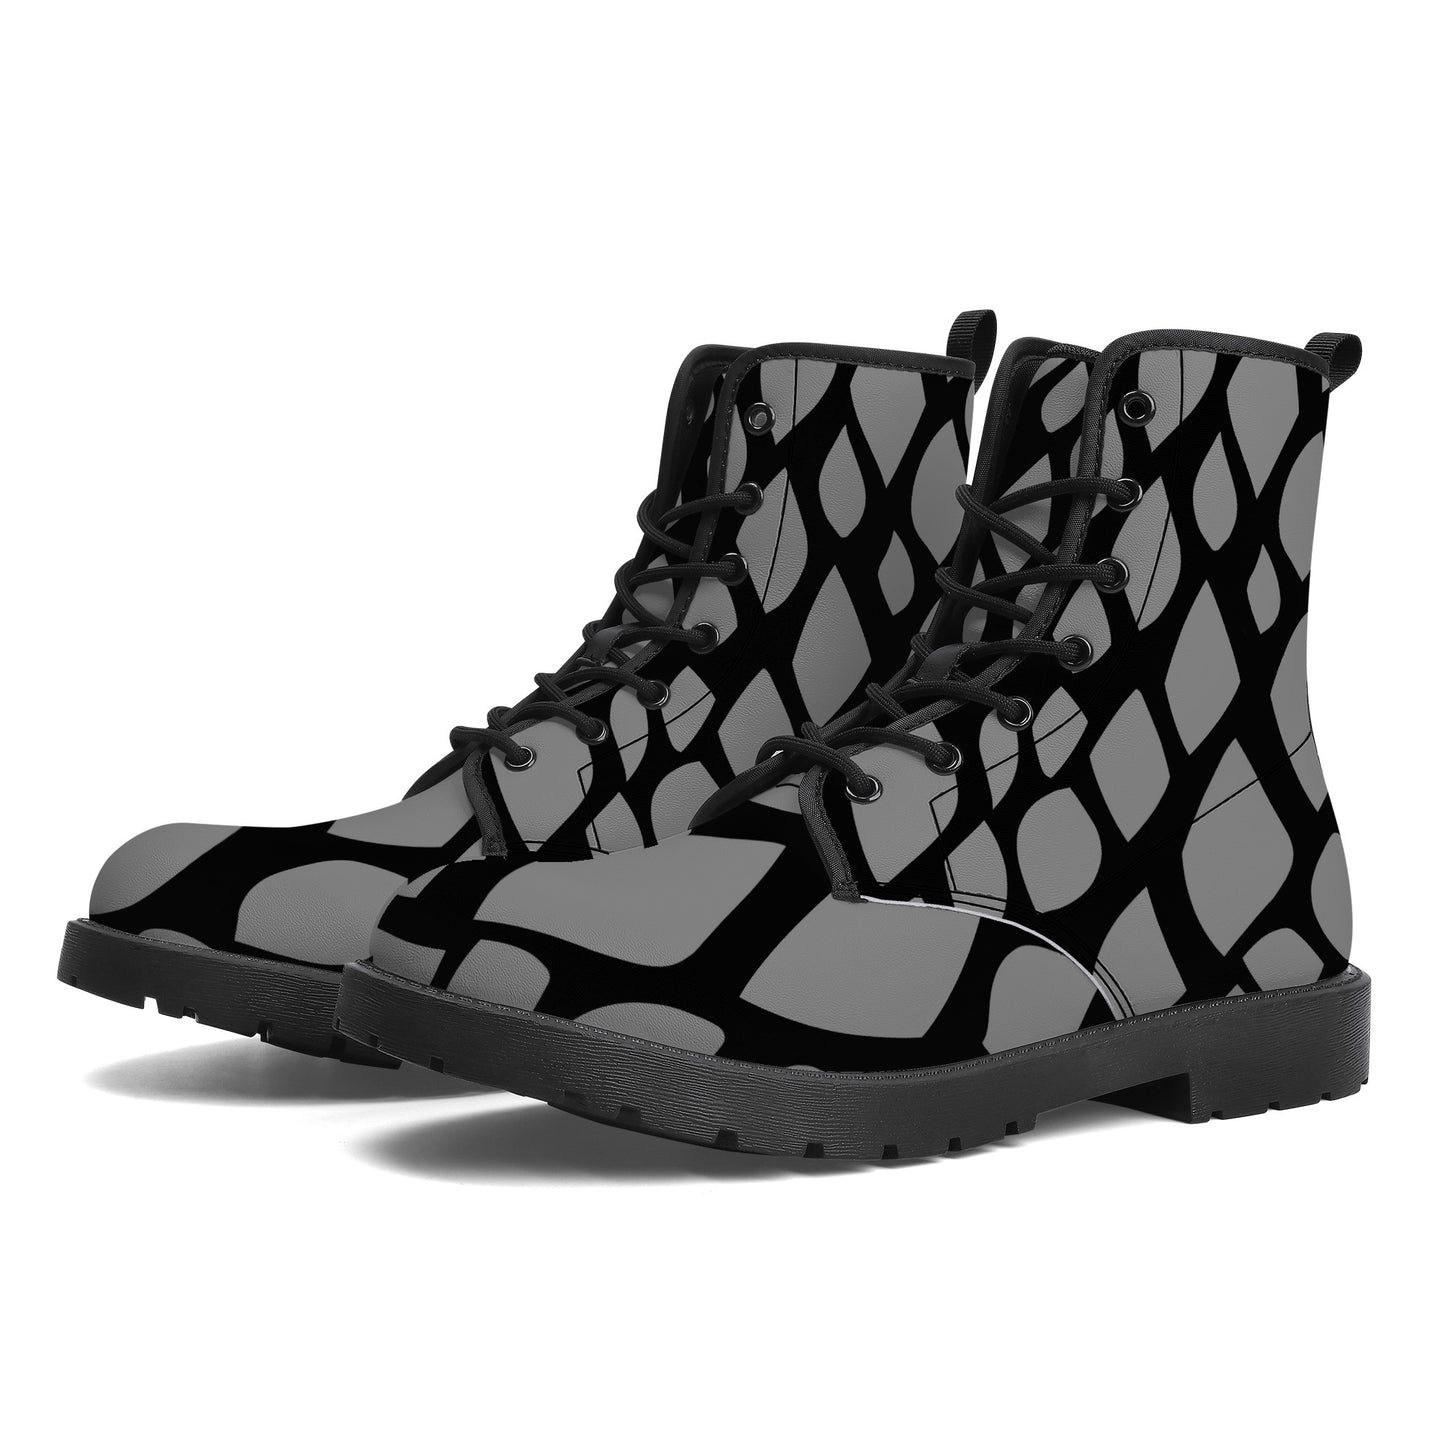 "Mono Snake" Eco-friendly Boots